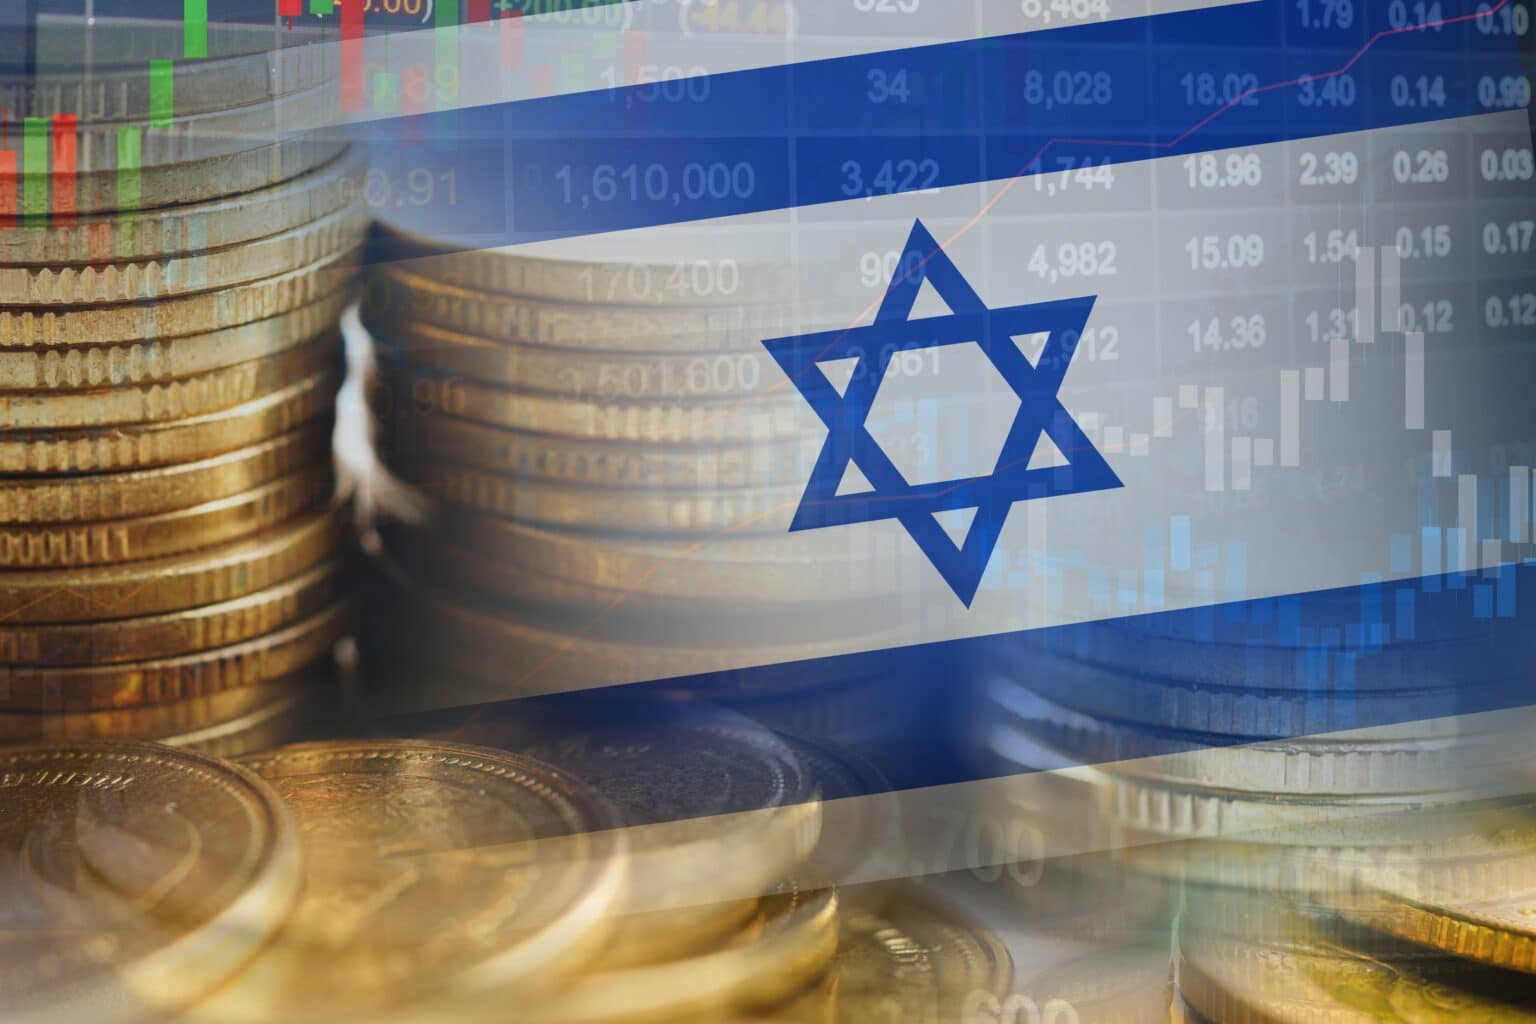 החוב החיצוני של ישראל זינק ליותר מרבע טריליון דולר